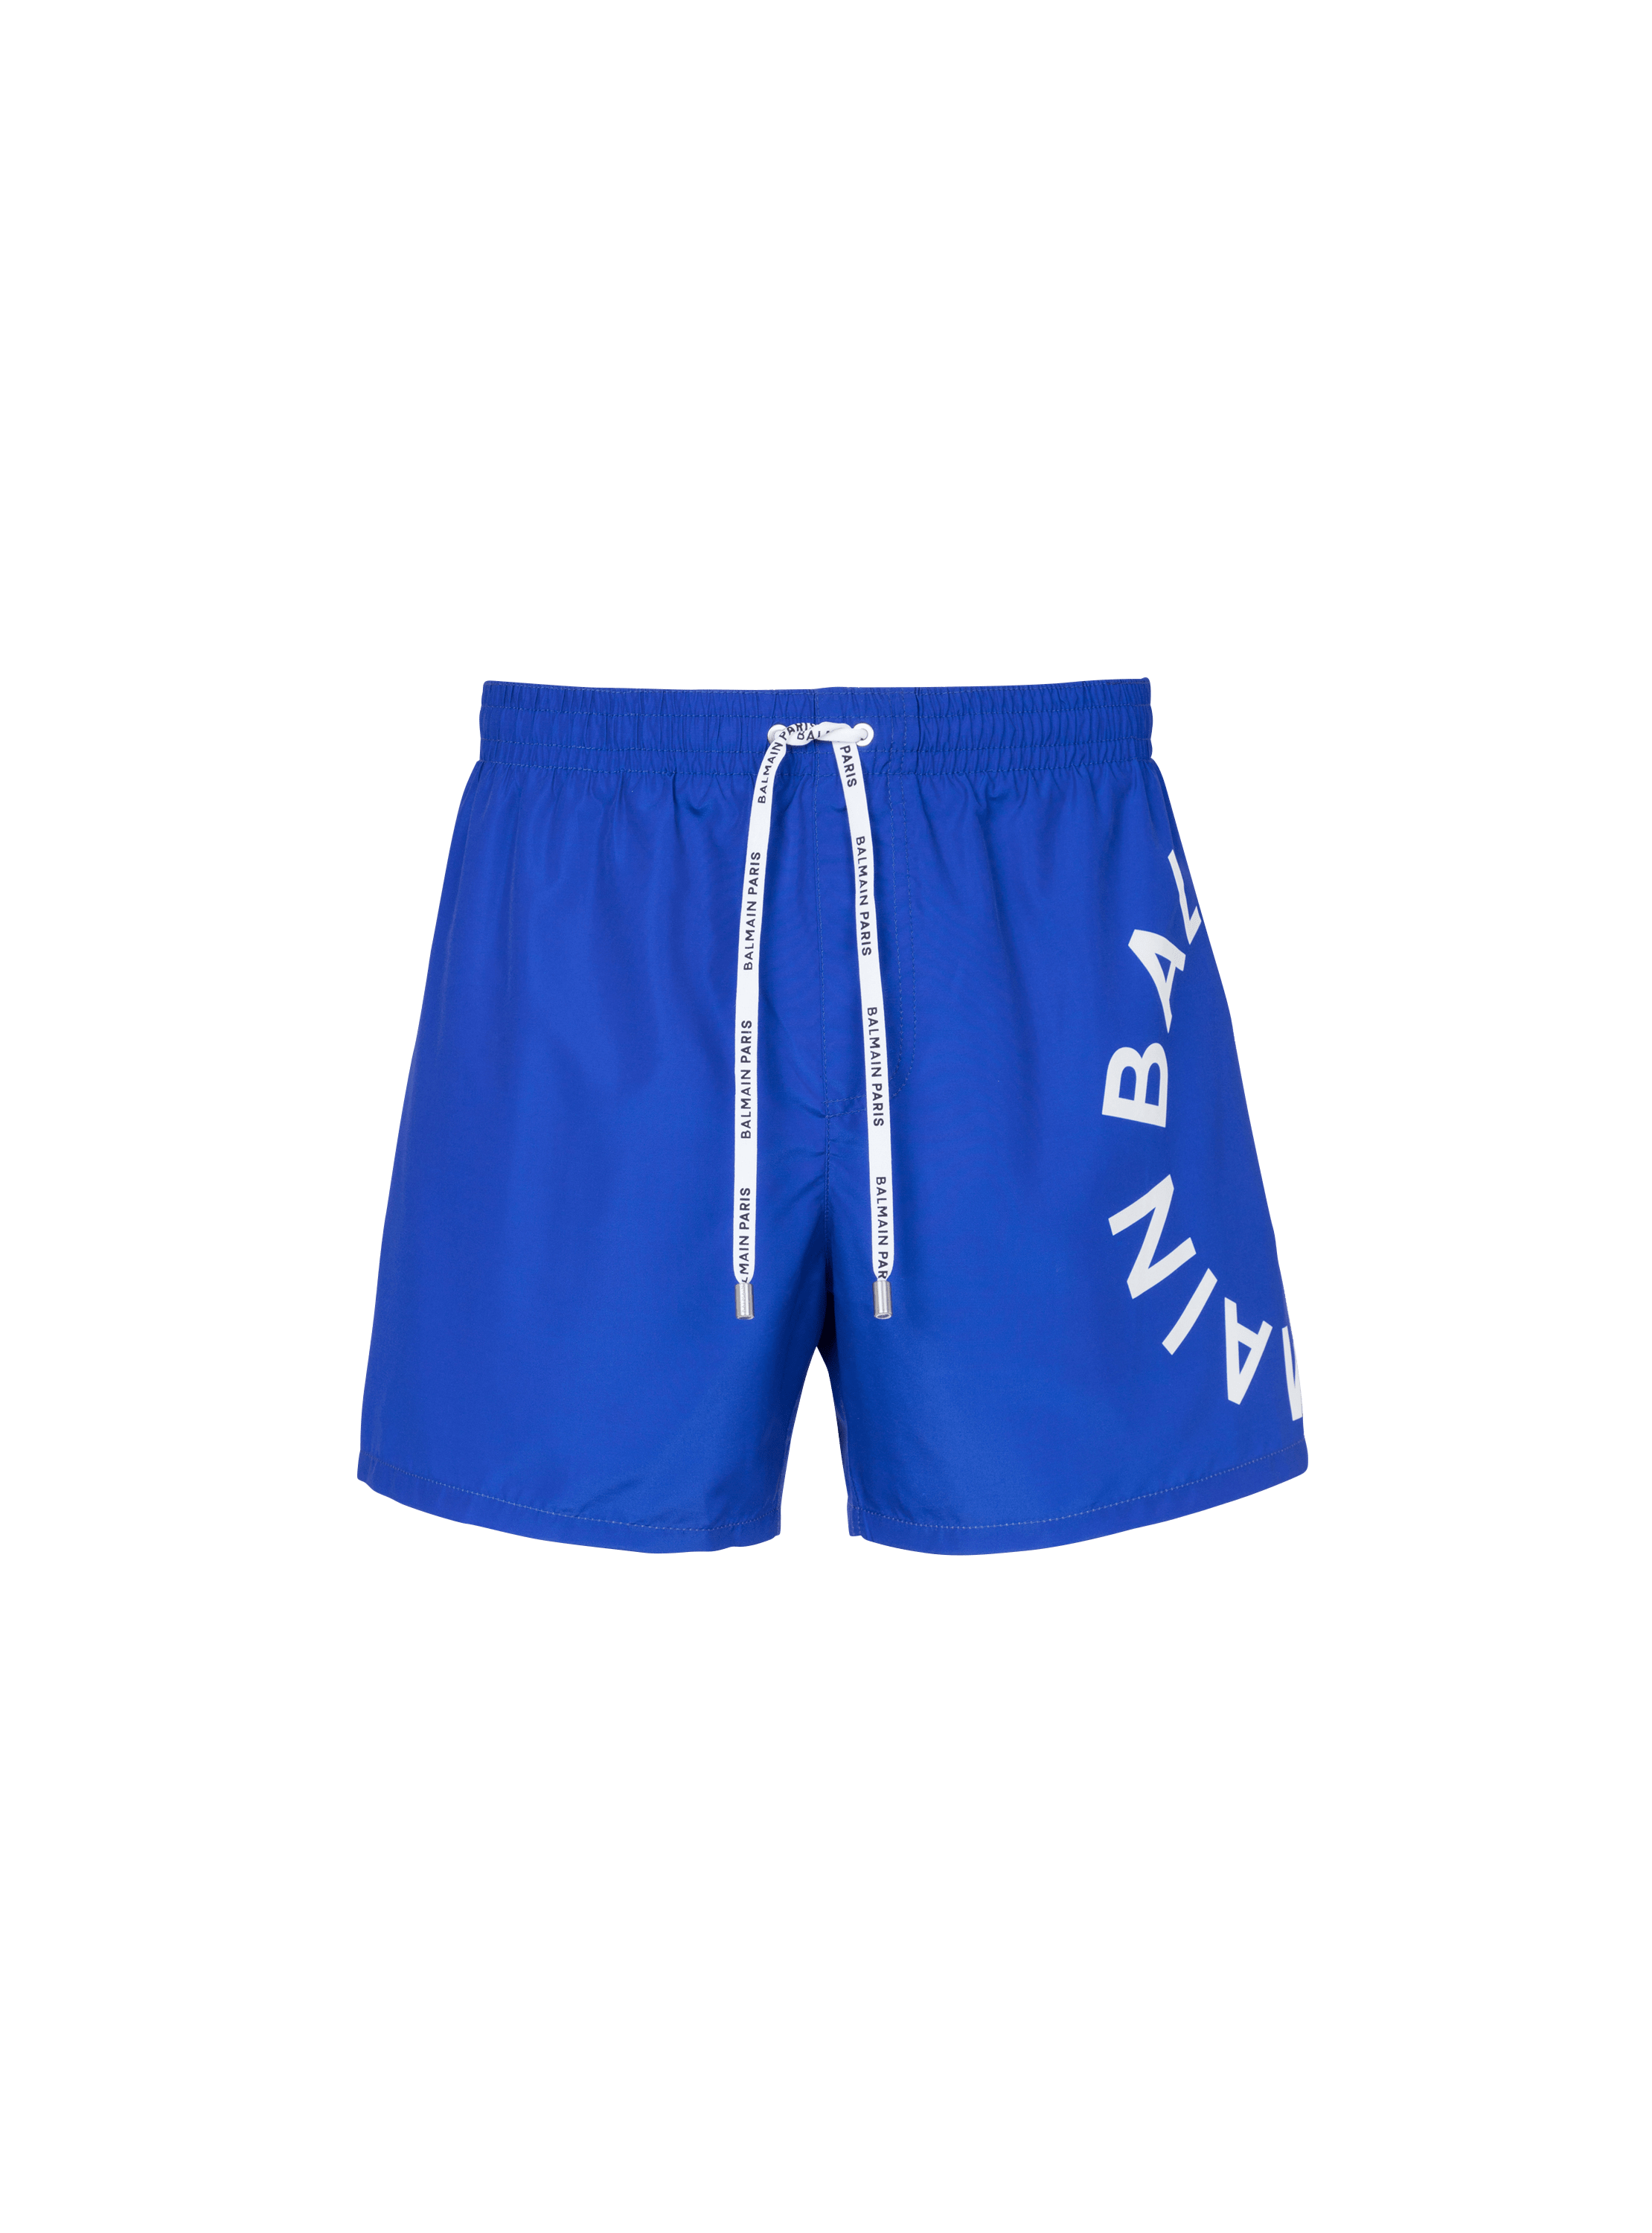 Balmain swim shorts, blue, hi-res